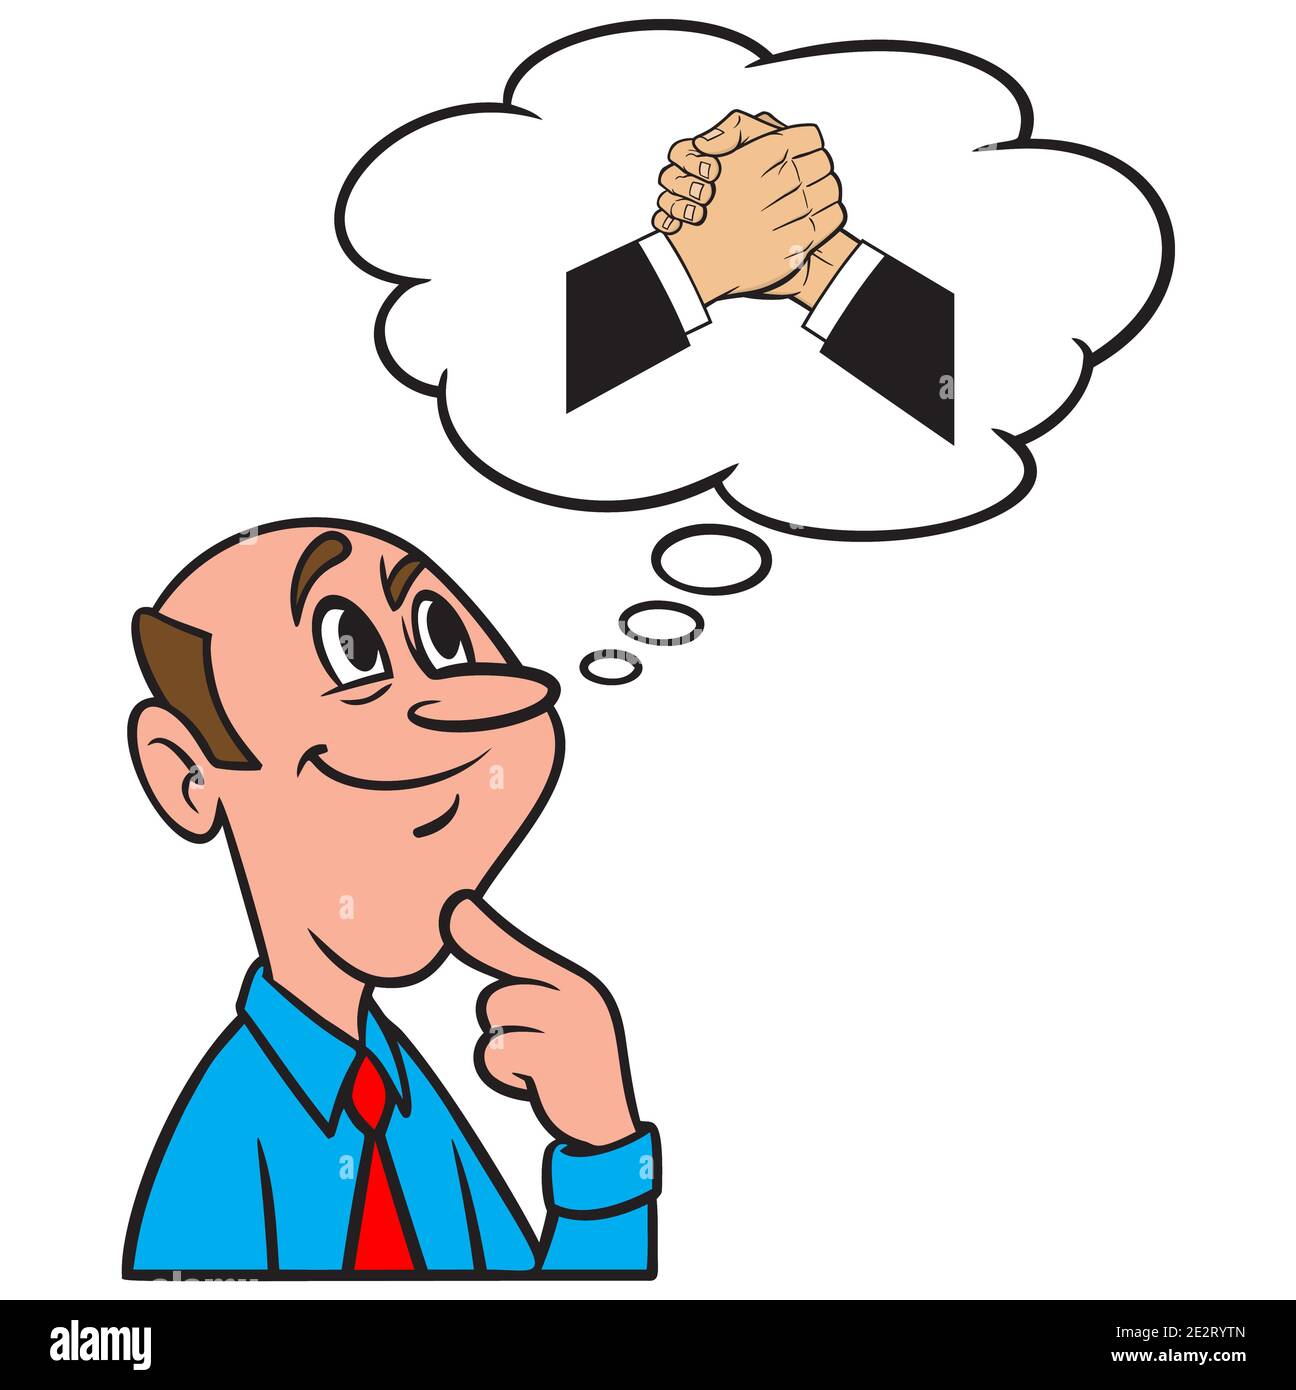 Thinking about a Cool Handshake - EINE Cartoon-Illustration eines Mannes, der an einen Cool Handshake denkt. Stock Vektor